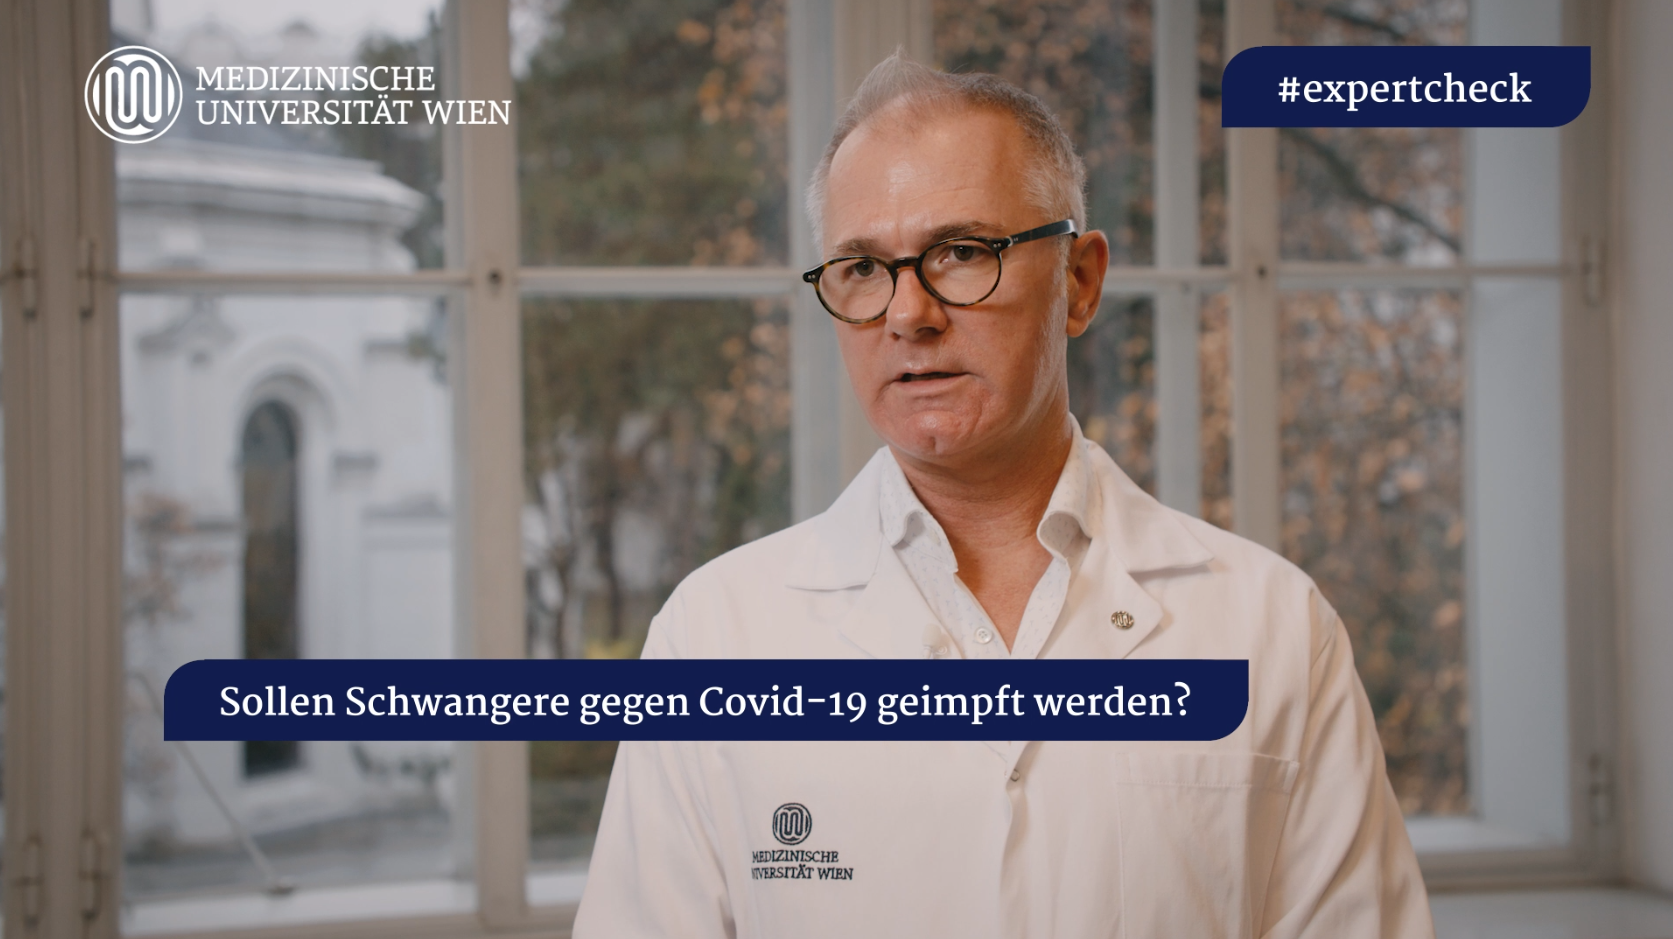 Video: #expertcheck - Sollen Schwangere gegen Covid-19 geimpft werden?